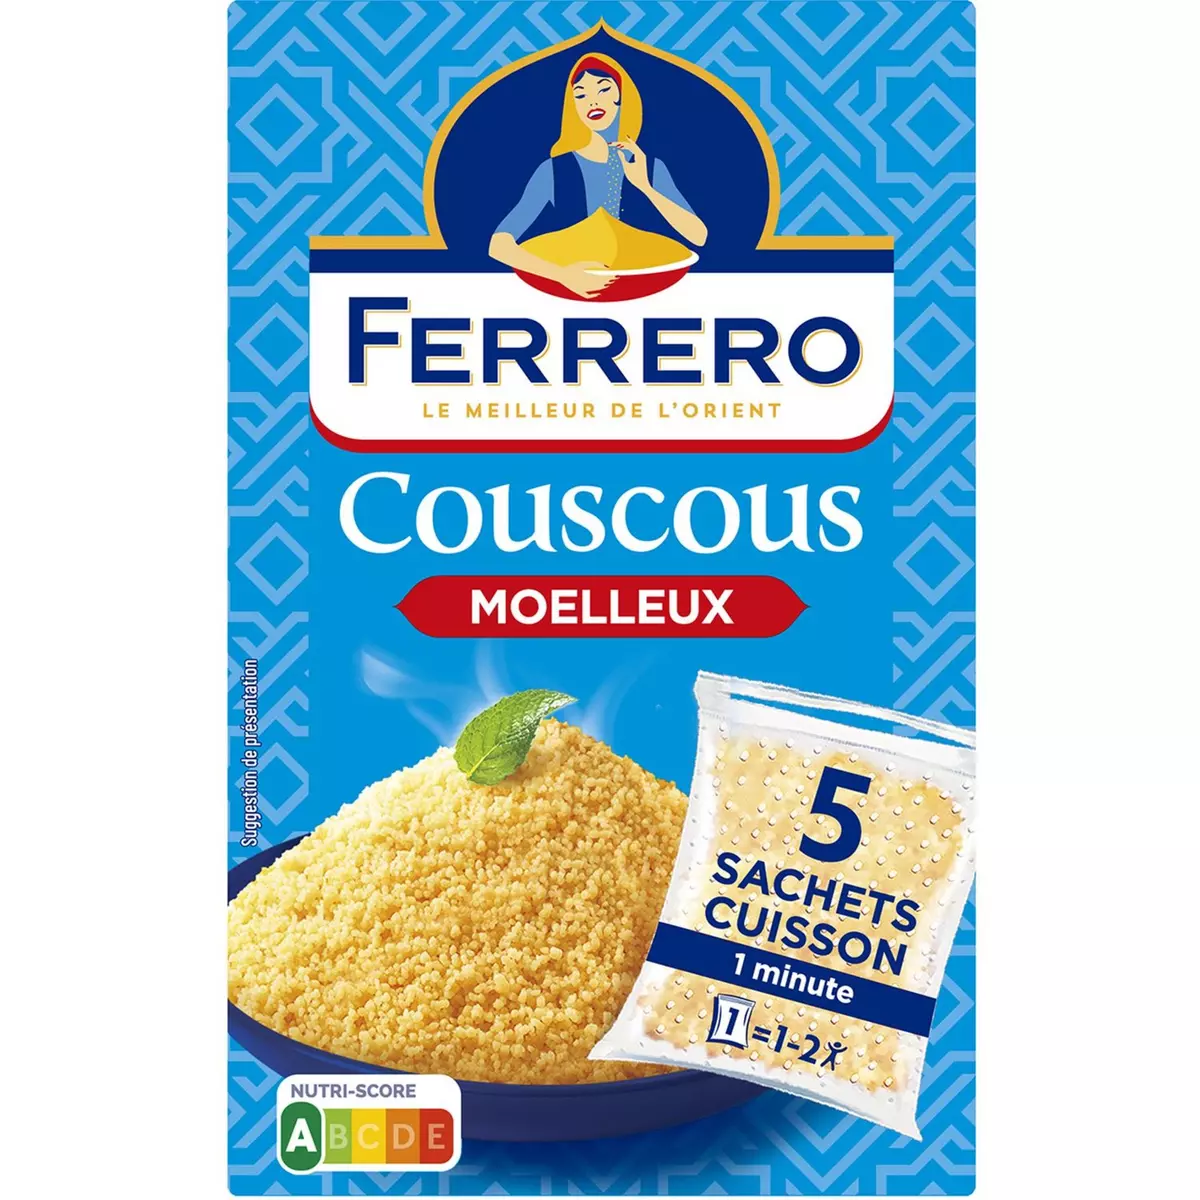 FERRERO Couscous moelleux en sachets cuisson 5 sachets 500g